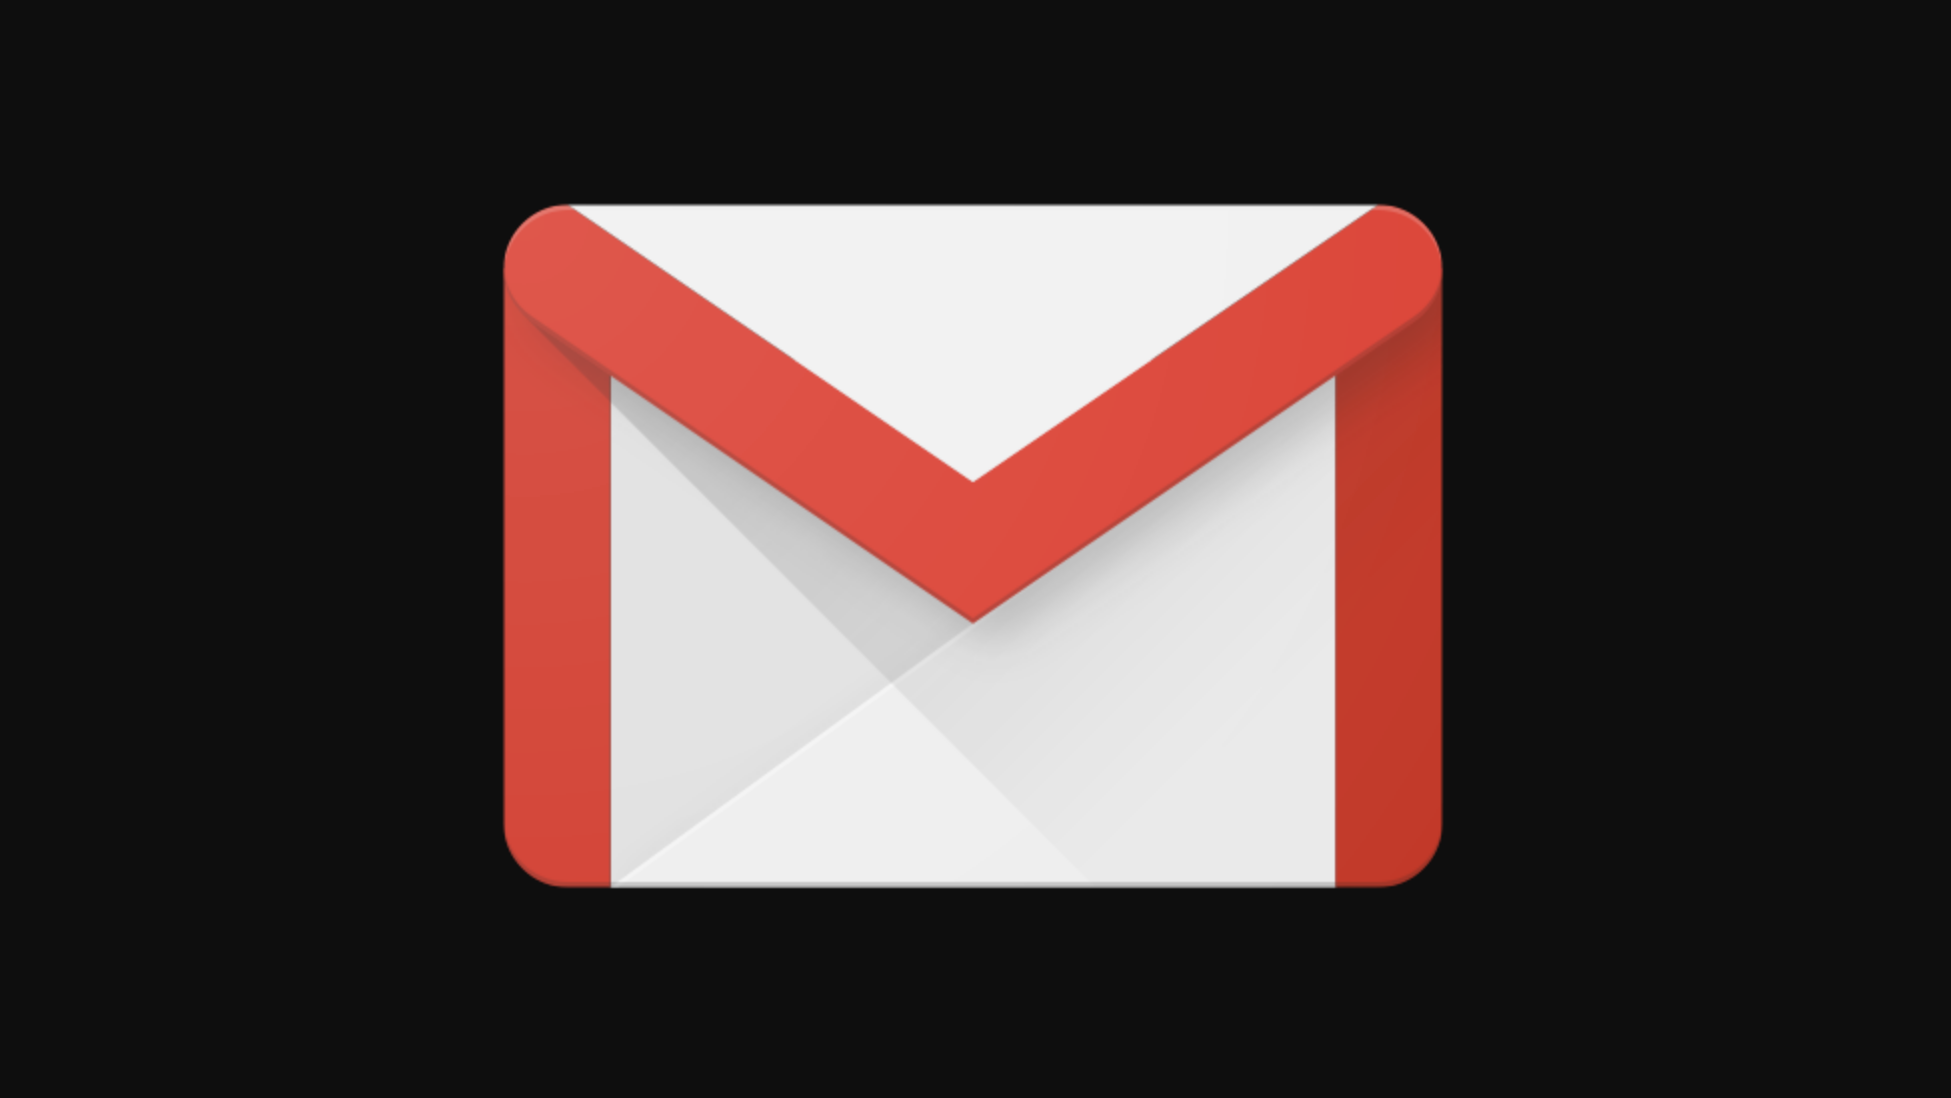 Logotipo do Gmail. Crédito: Gizmodo